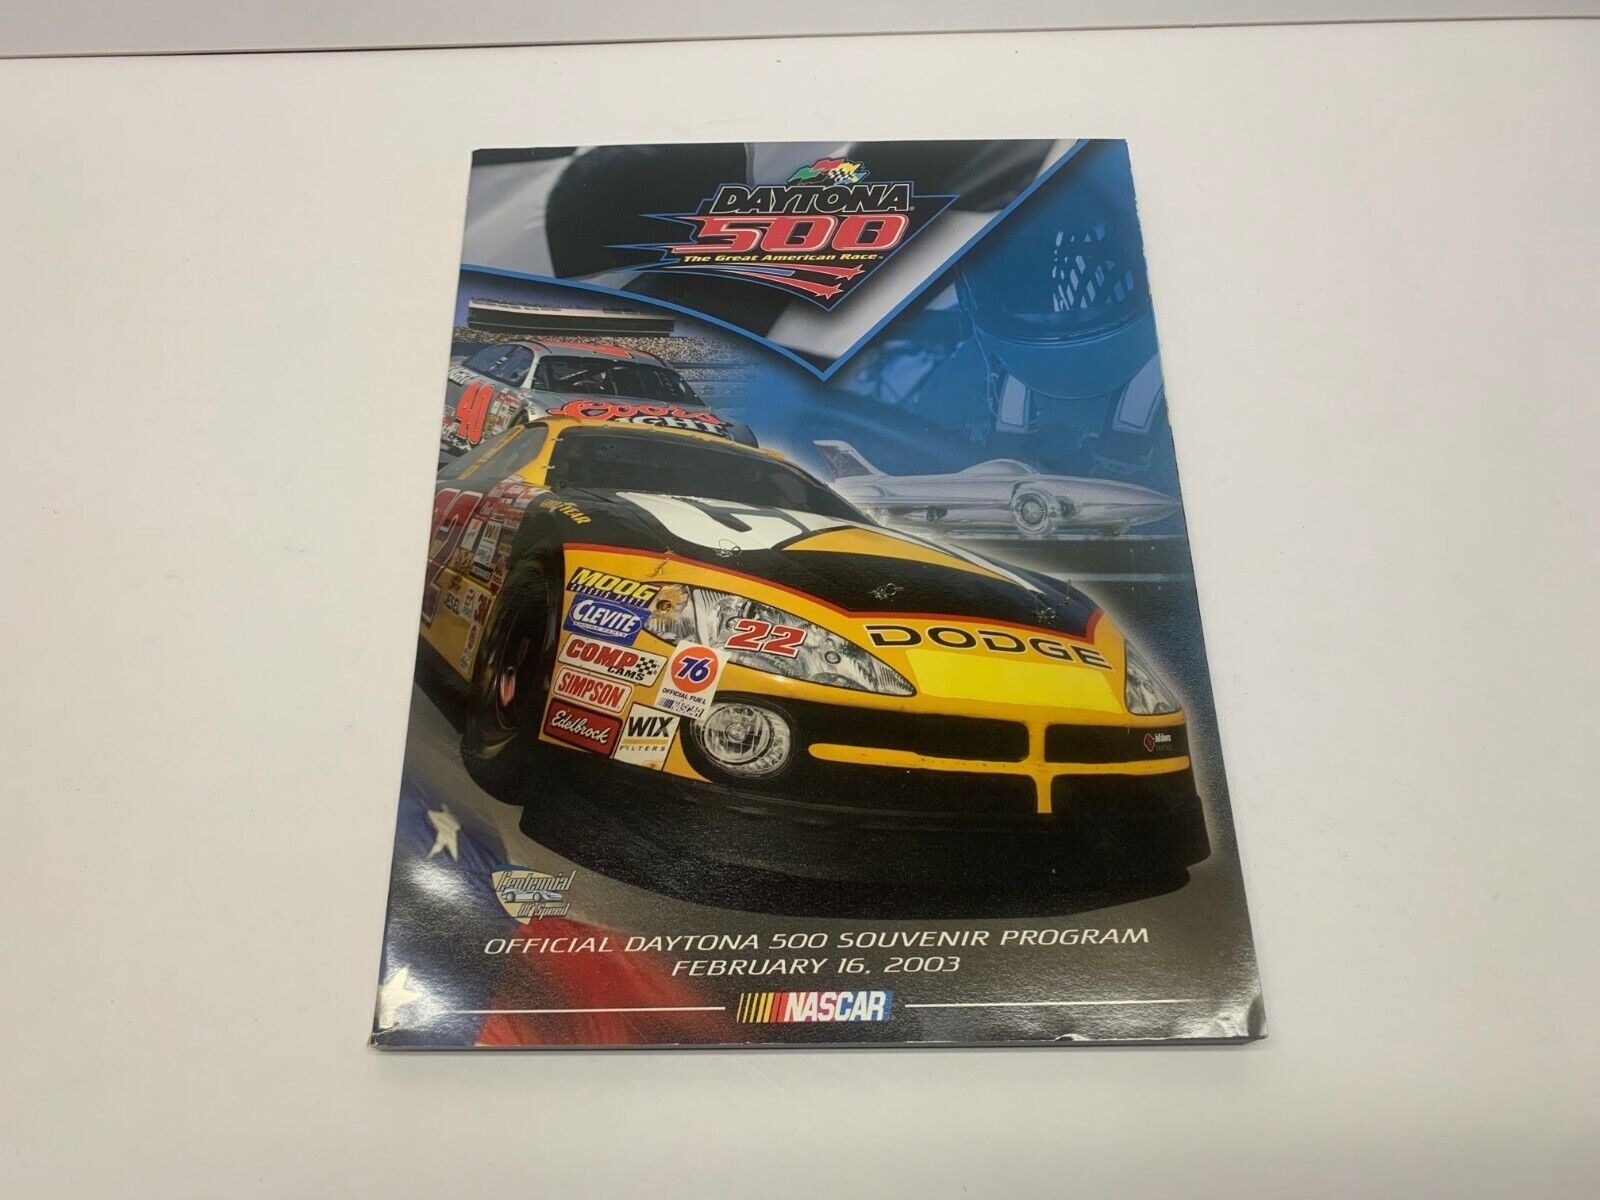 2003 Daytona 500 Official Racing Program Souvenir in ex condition